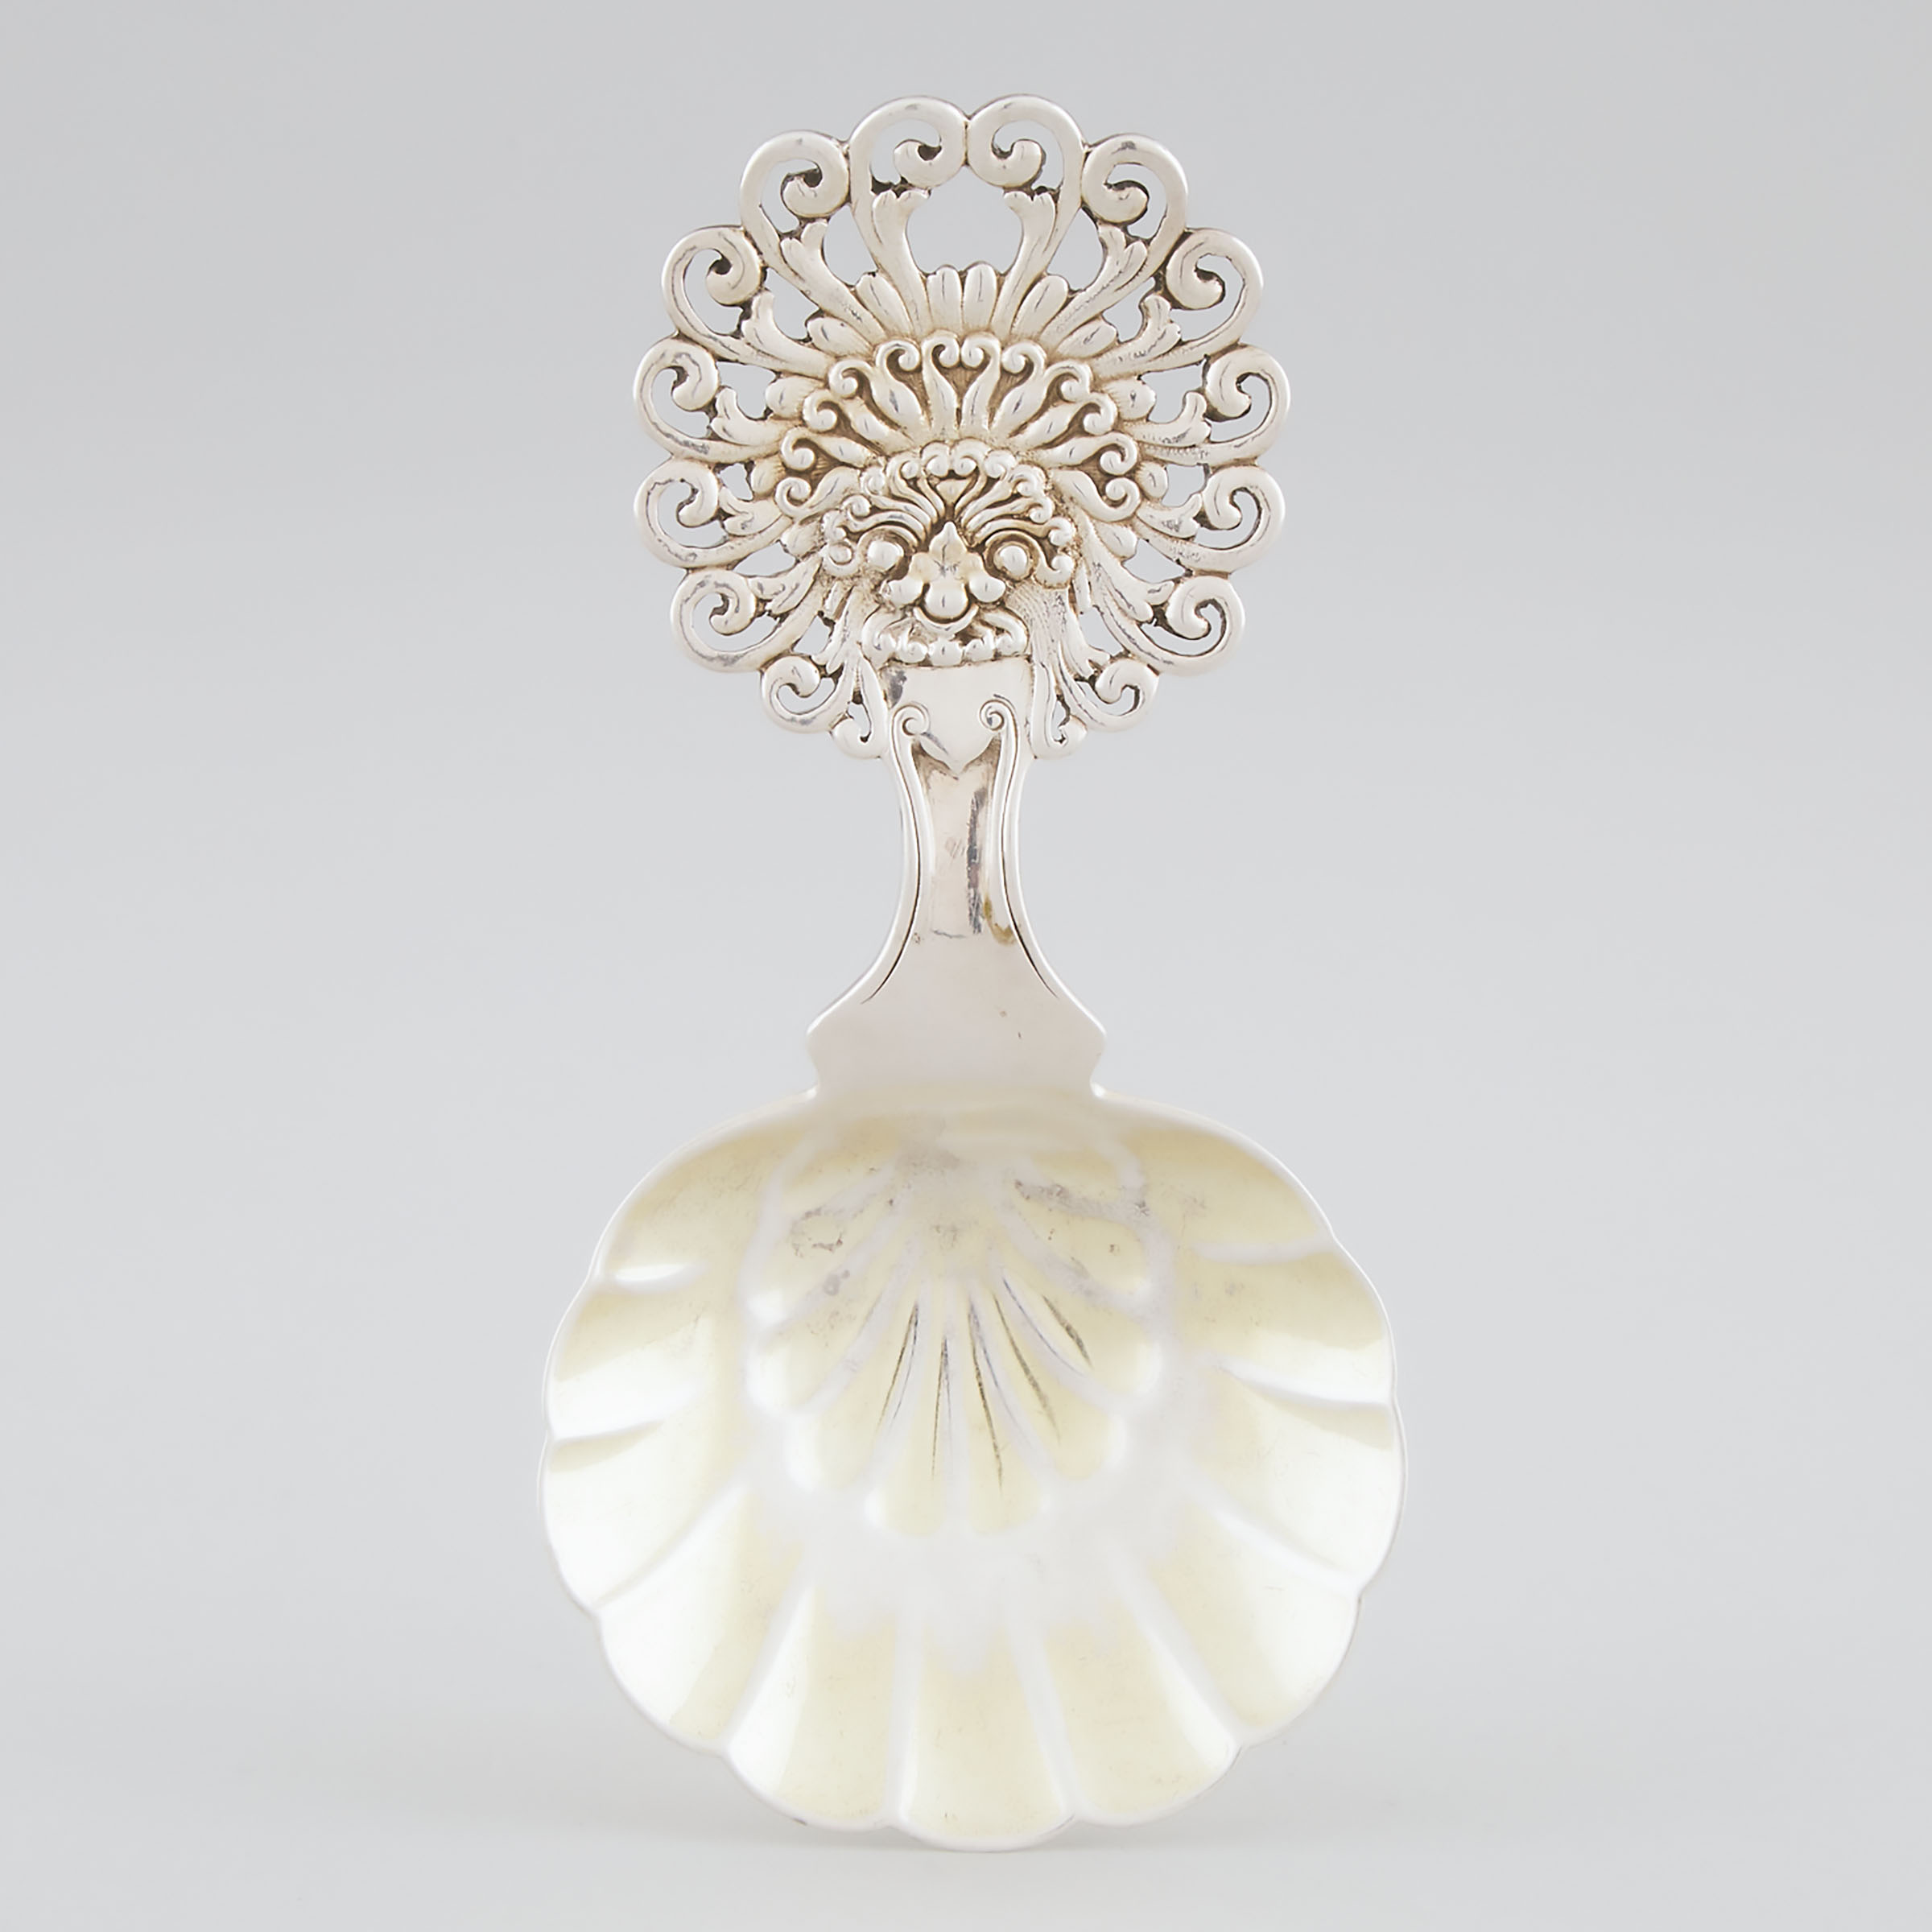 American Silver Parcel-Gilt Bon-Bon Spoon, Tiffany & Co., New York, N.Y., c.1875-91